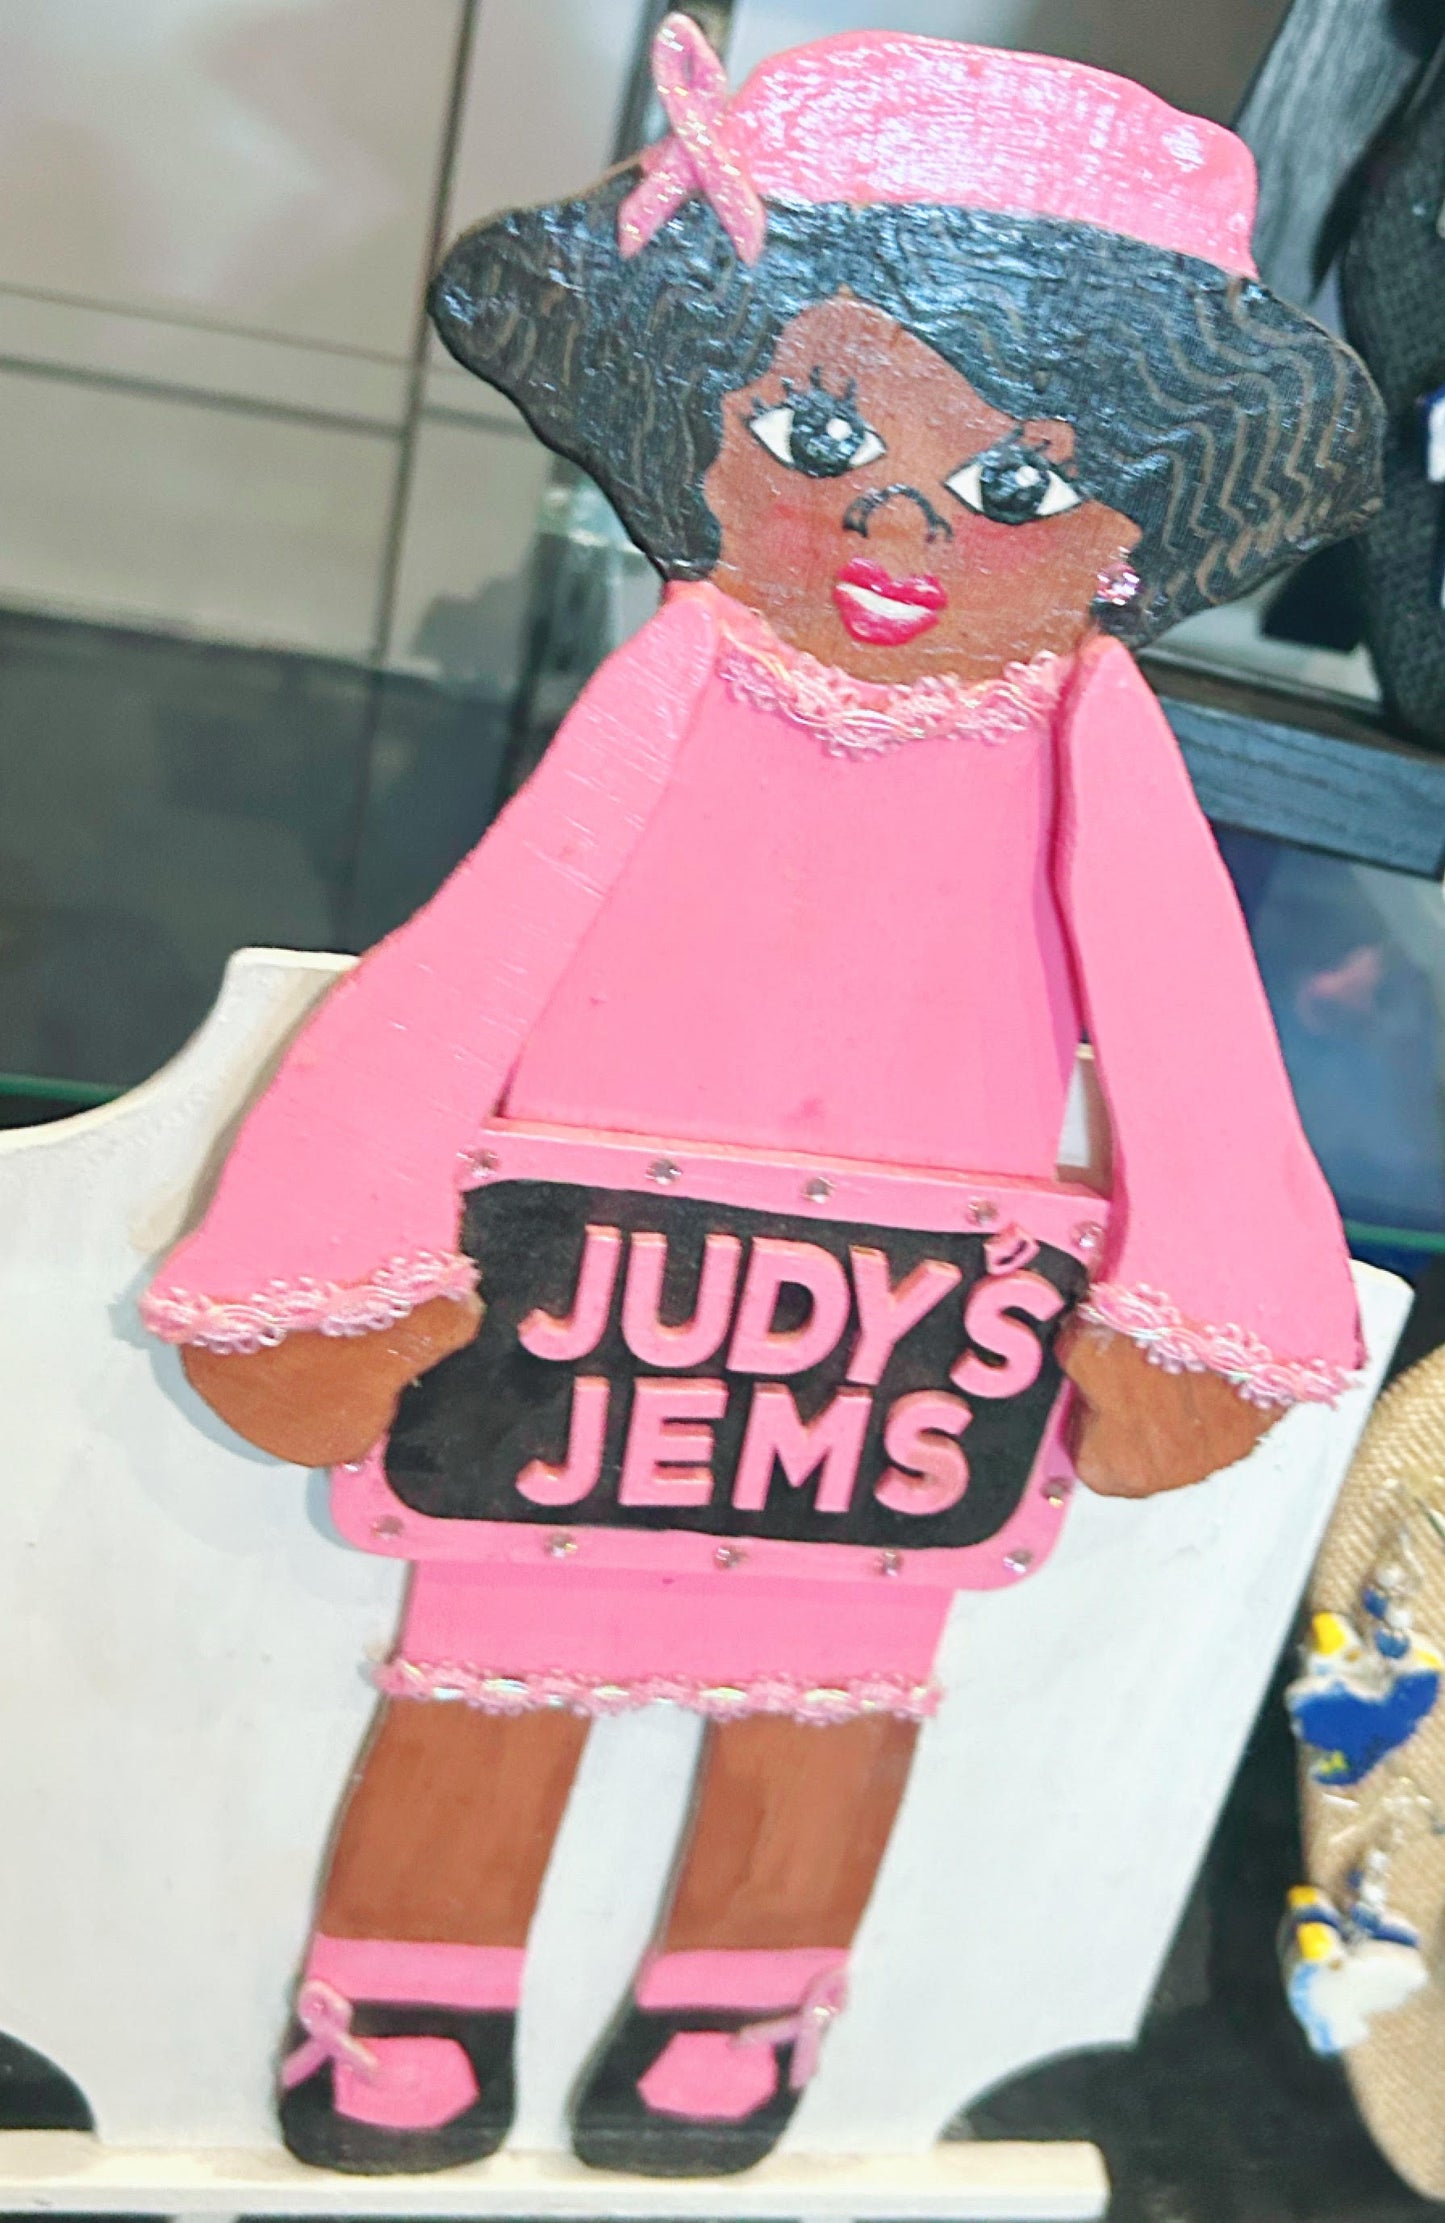 Judy's Jems